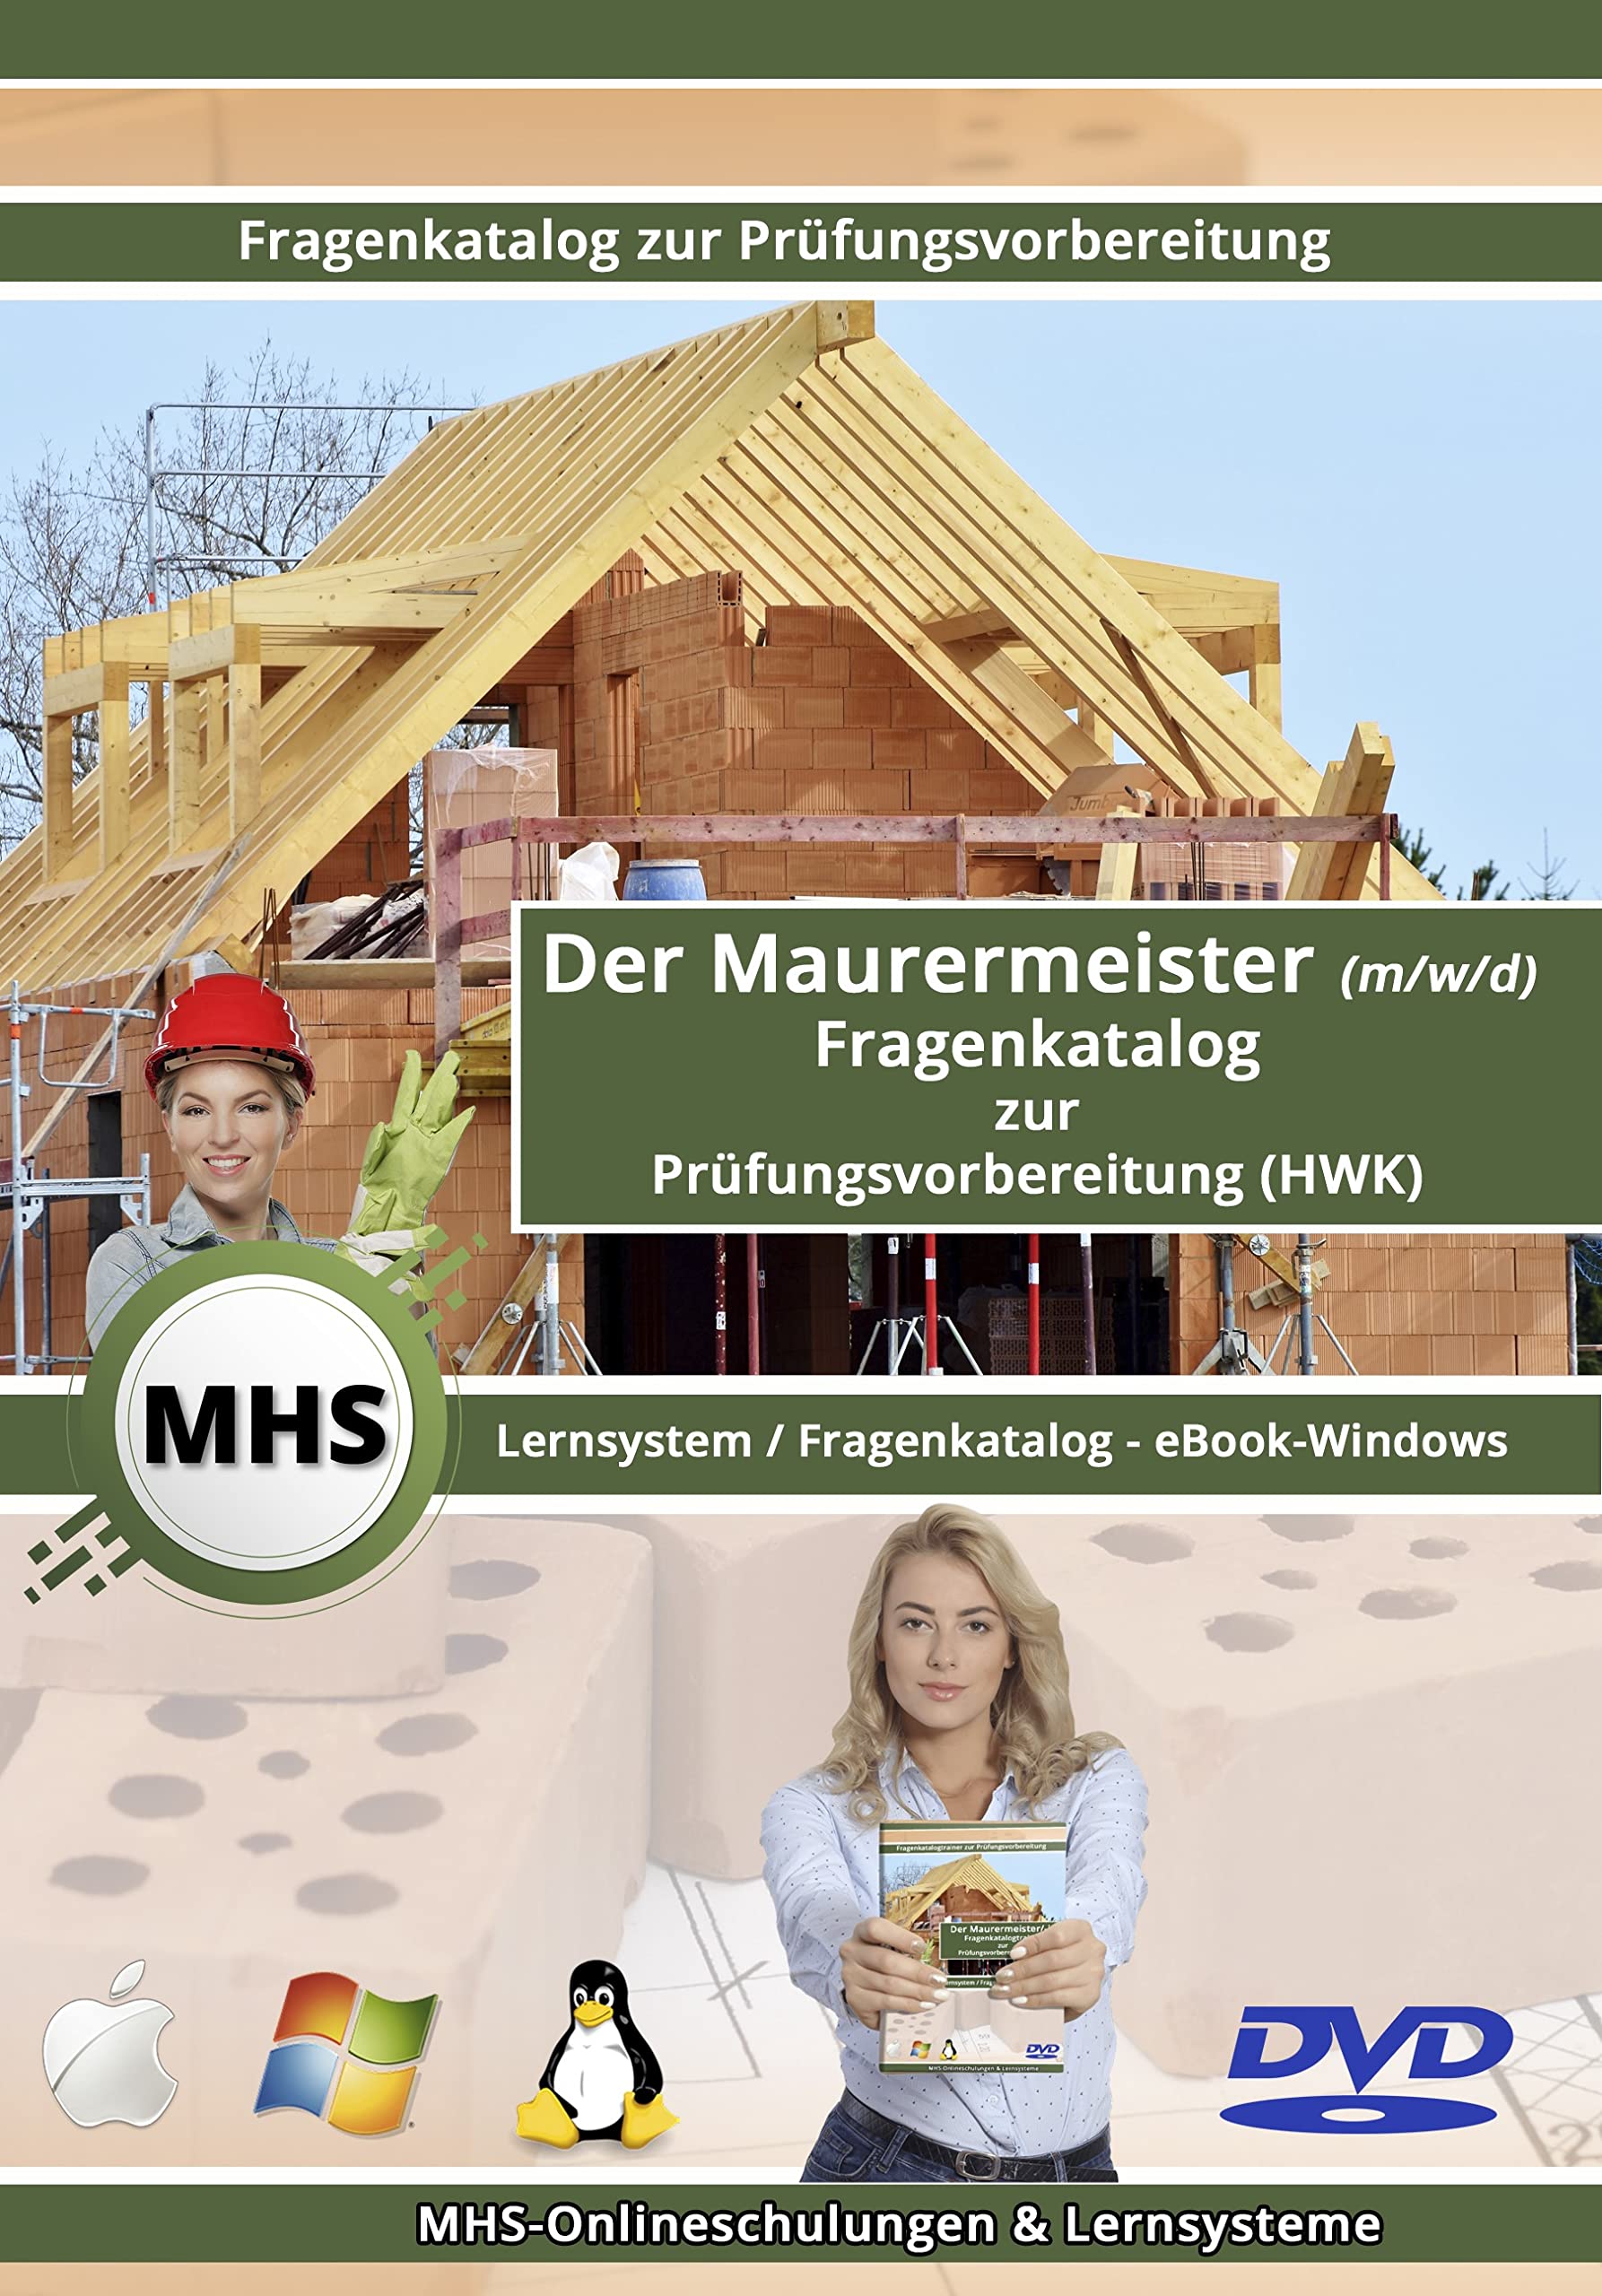 Maurermeister - Fragenkatalog - ExpertKit-Version mit allen Handlungs- & Lernfeldern - eBook für Windows auf DVD